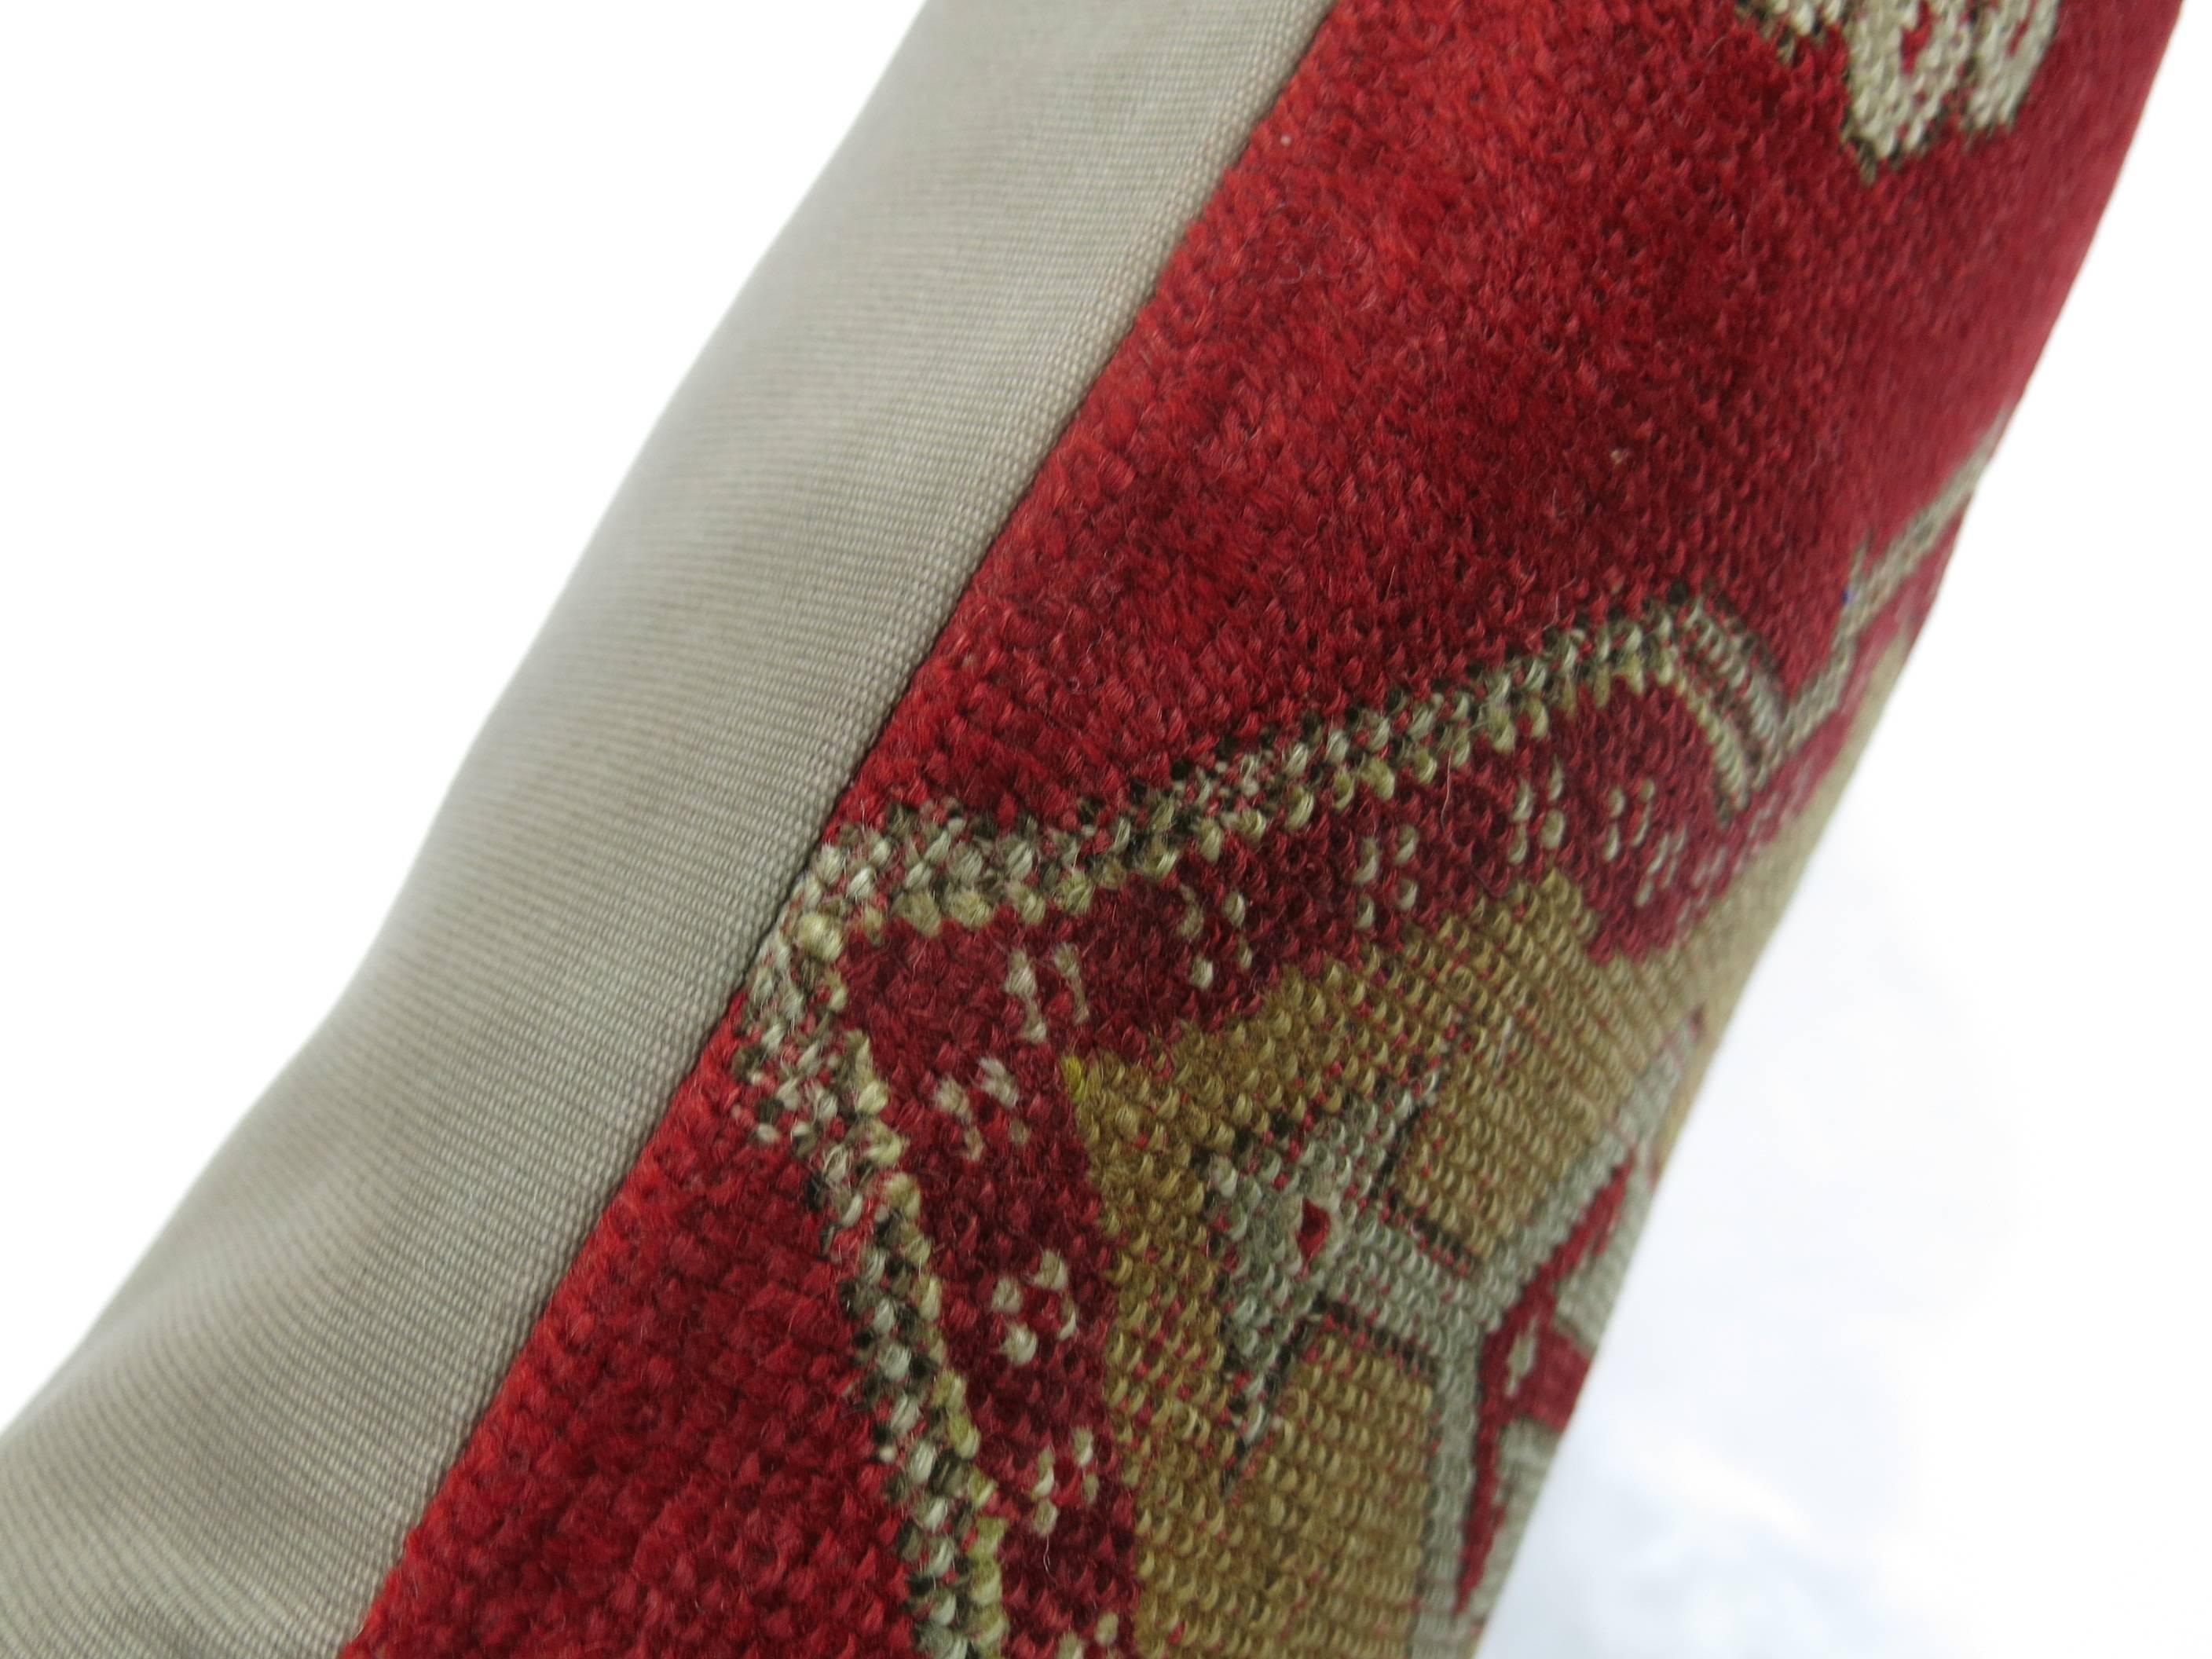 Großes Kissen aus einem alten türkischen Teppich. Rote, braune und grüne Akzente. 

18'' x 28''